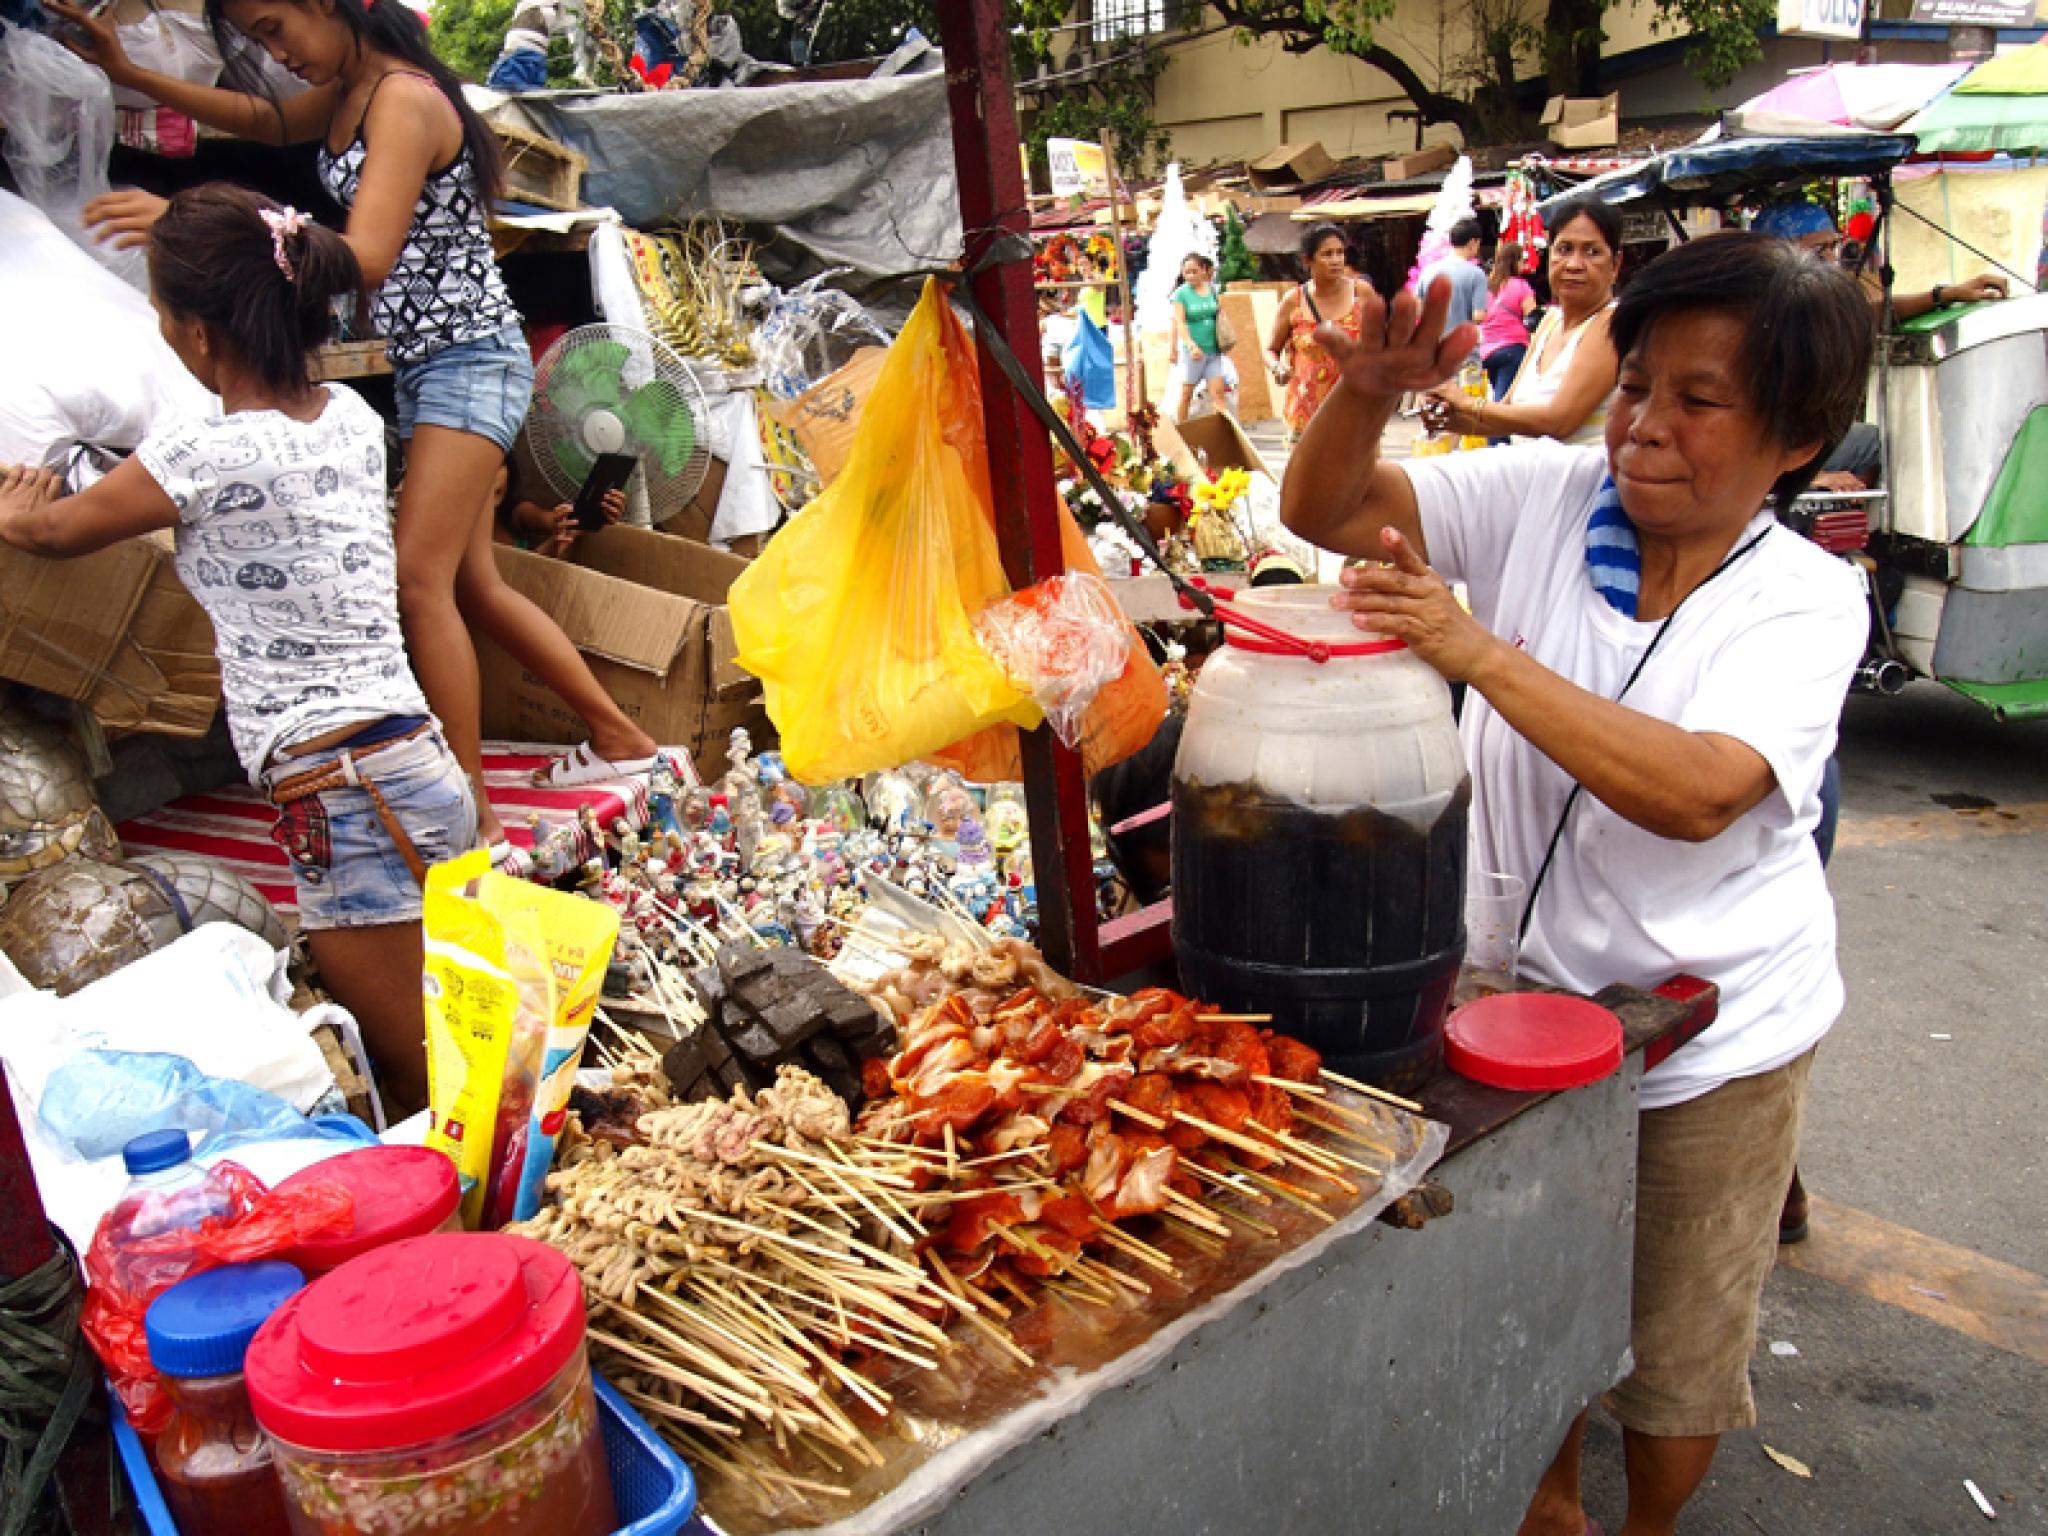 Food Market stall selling skewers